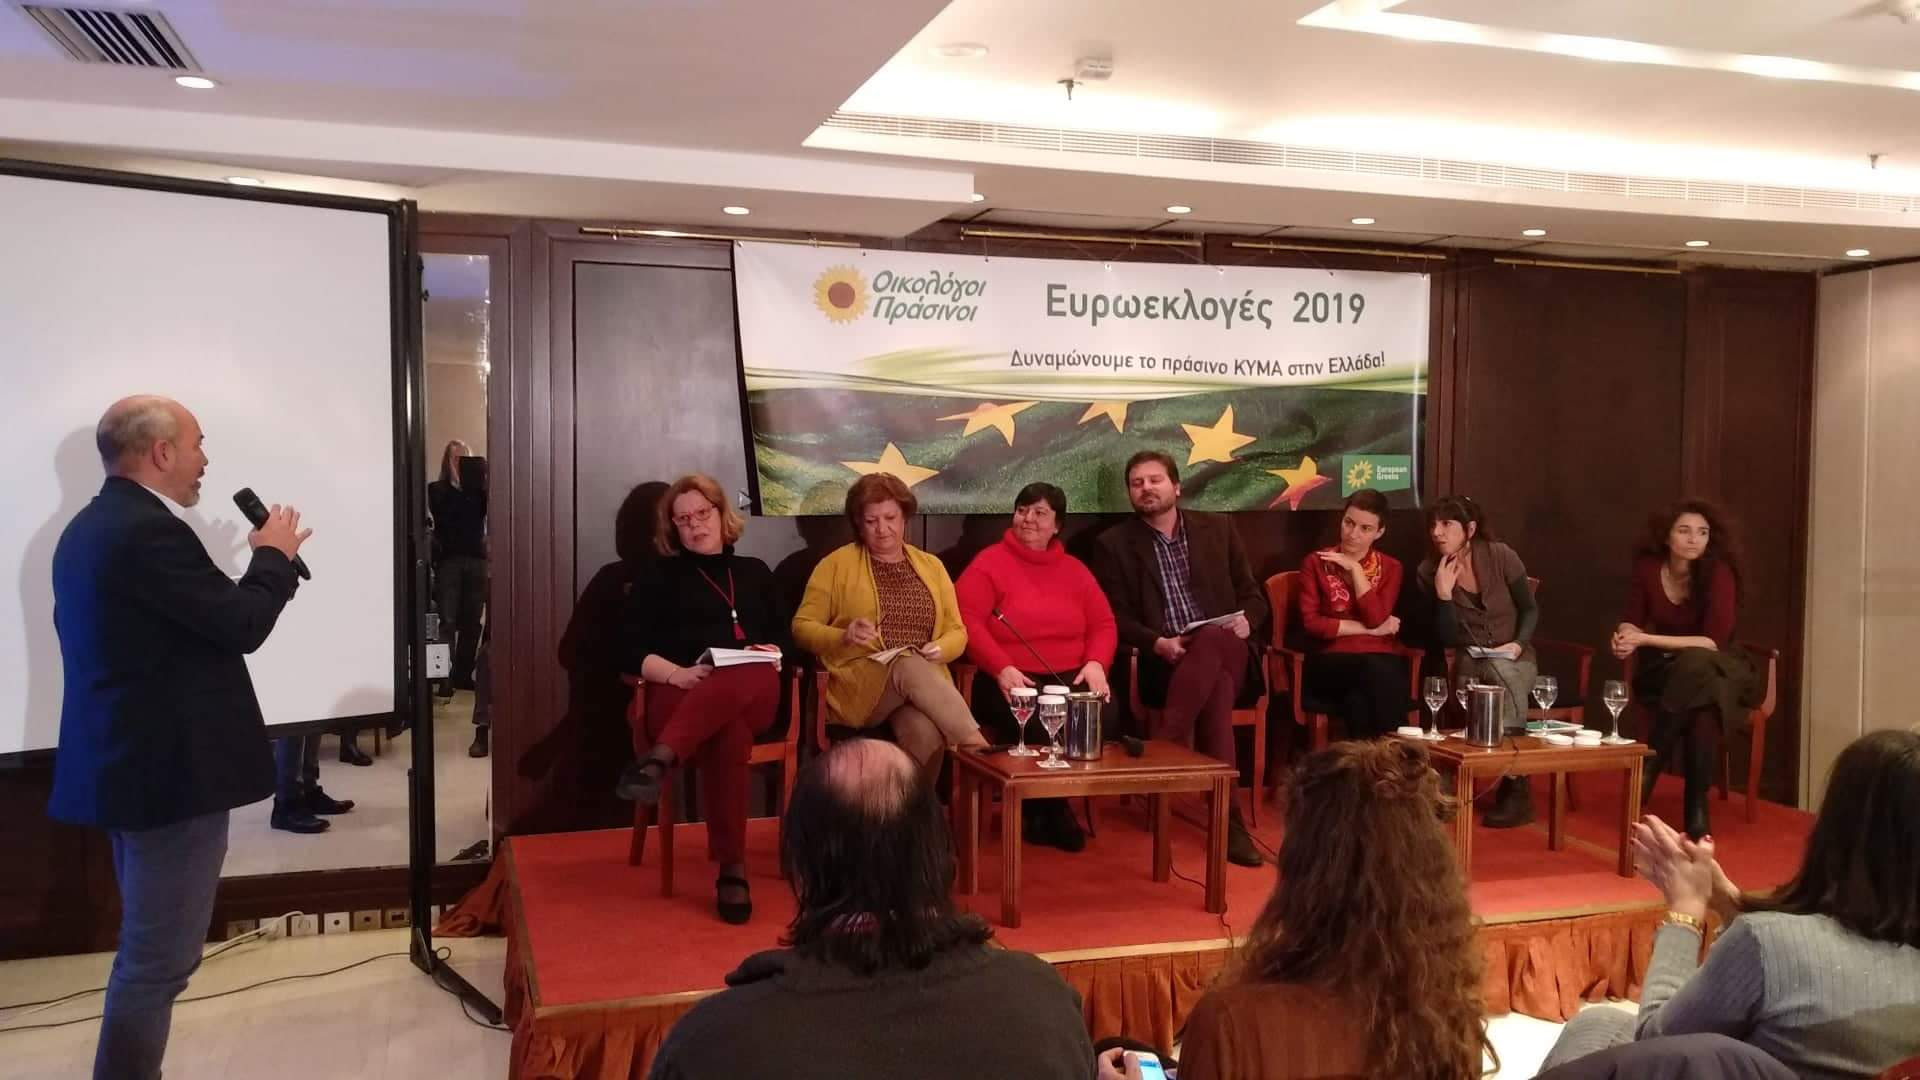 Με μεγάλη επιτυχία πραγματοποιήθηκε χθες στο ξενοδοχείο Τιτάνια  η εκδήλωση -συζήτηση με την Σκα Κέλλερ, επικεφαλής της καμπάνιας των Ευρωπαίων Πράσινων και υποψηφίους των Οικολόγων Πράσινων για τις εκλογές 2019. Την εκδήλωση […]